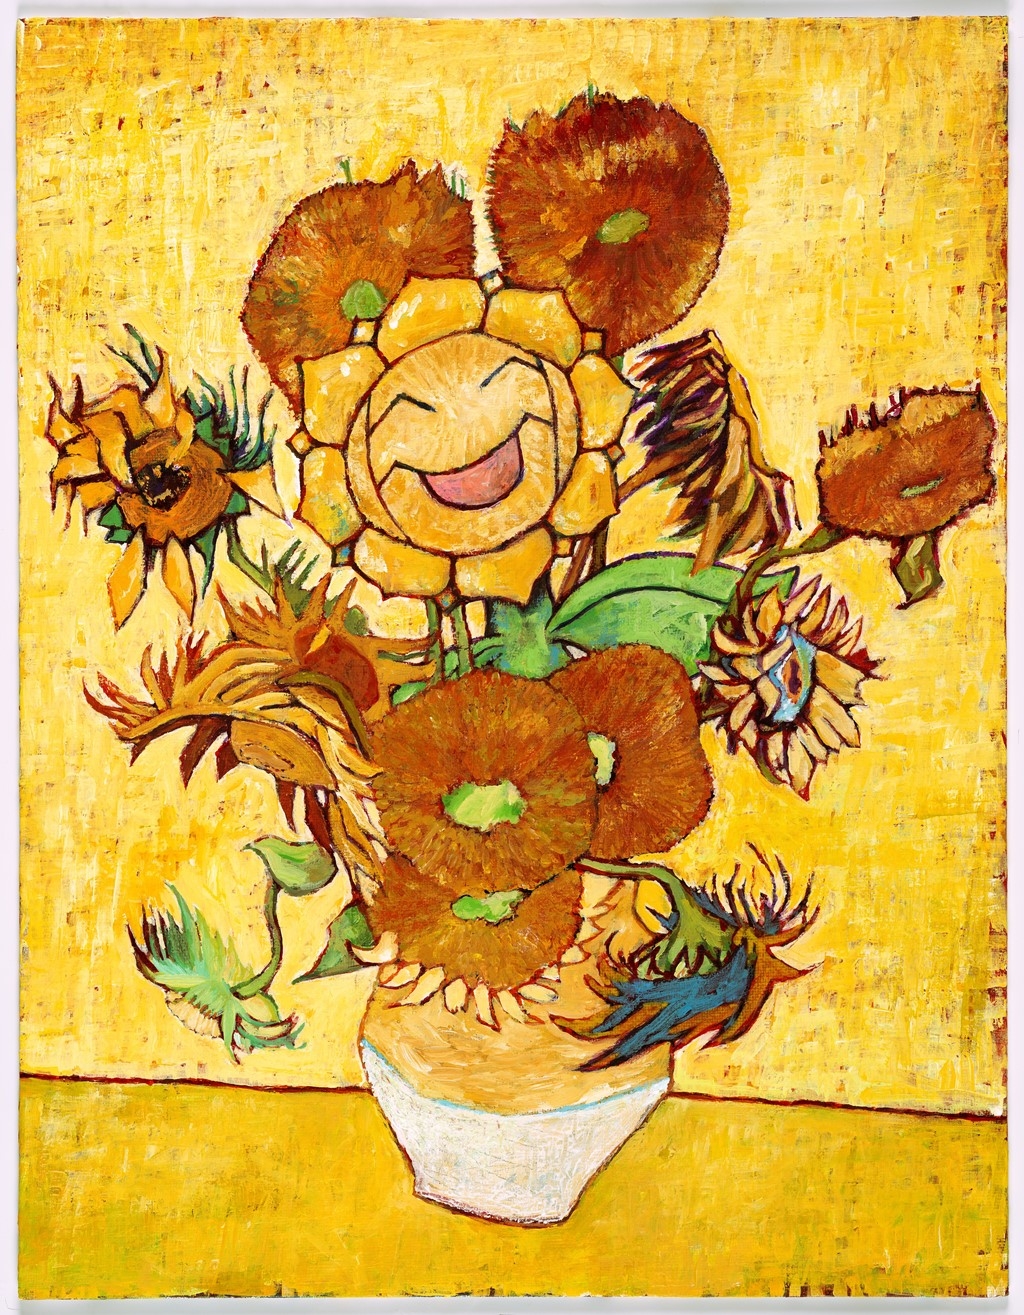 Pokemon x Van Gogh Museum - Sunflora inspired by Sunflowers